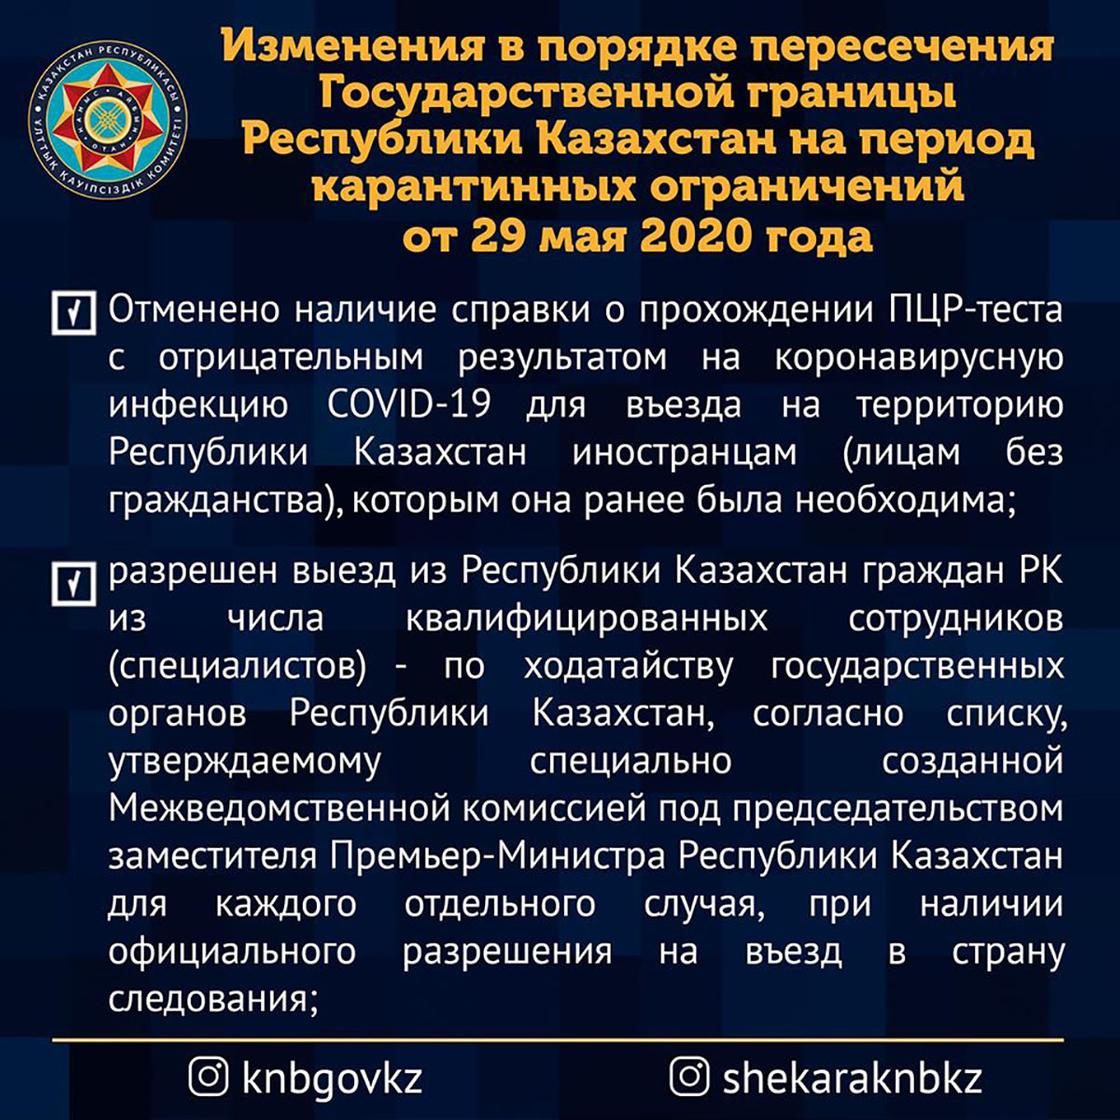 Правила пересечения госграницы Казахстана были изменены